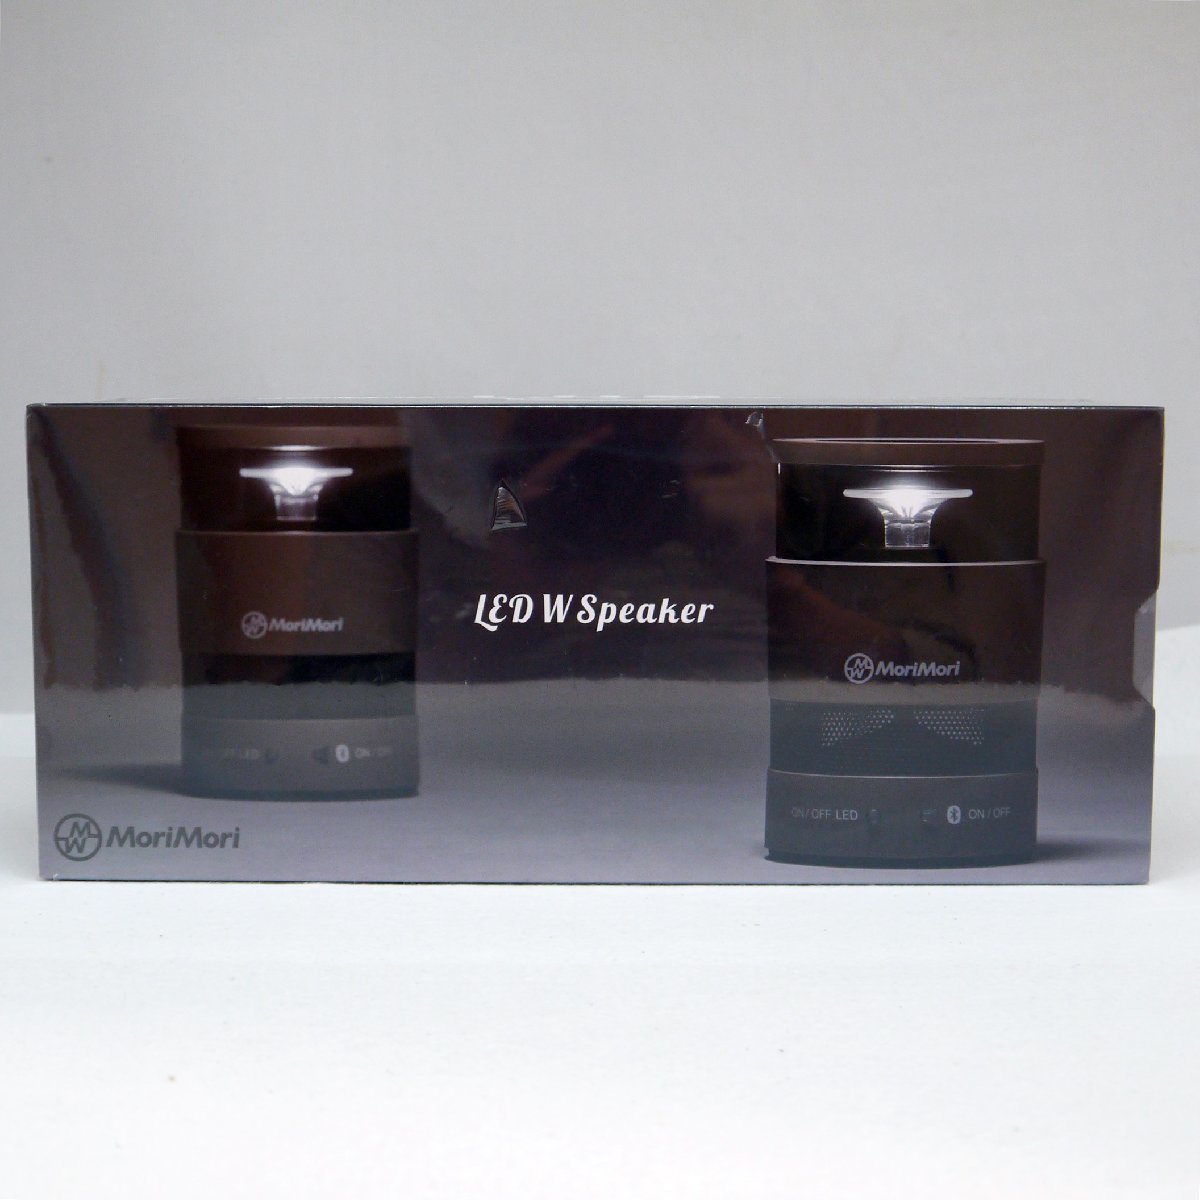 未開封品・保管品 MoriMori LED W Speaker ダブルスピーカー FWS-1701-GR Forest フォレスト ダークグレー 未使用品